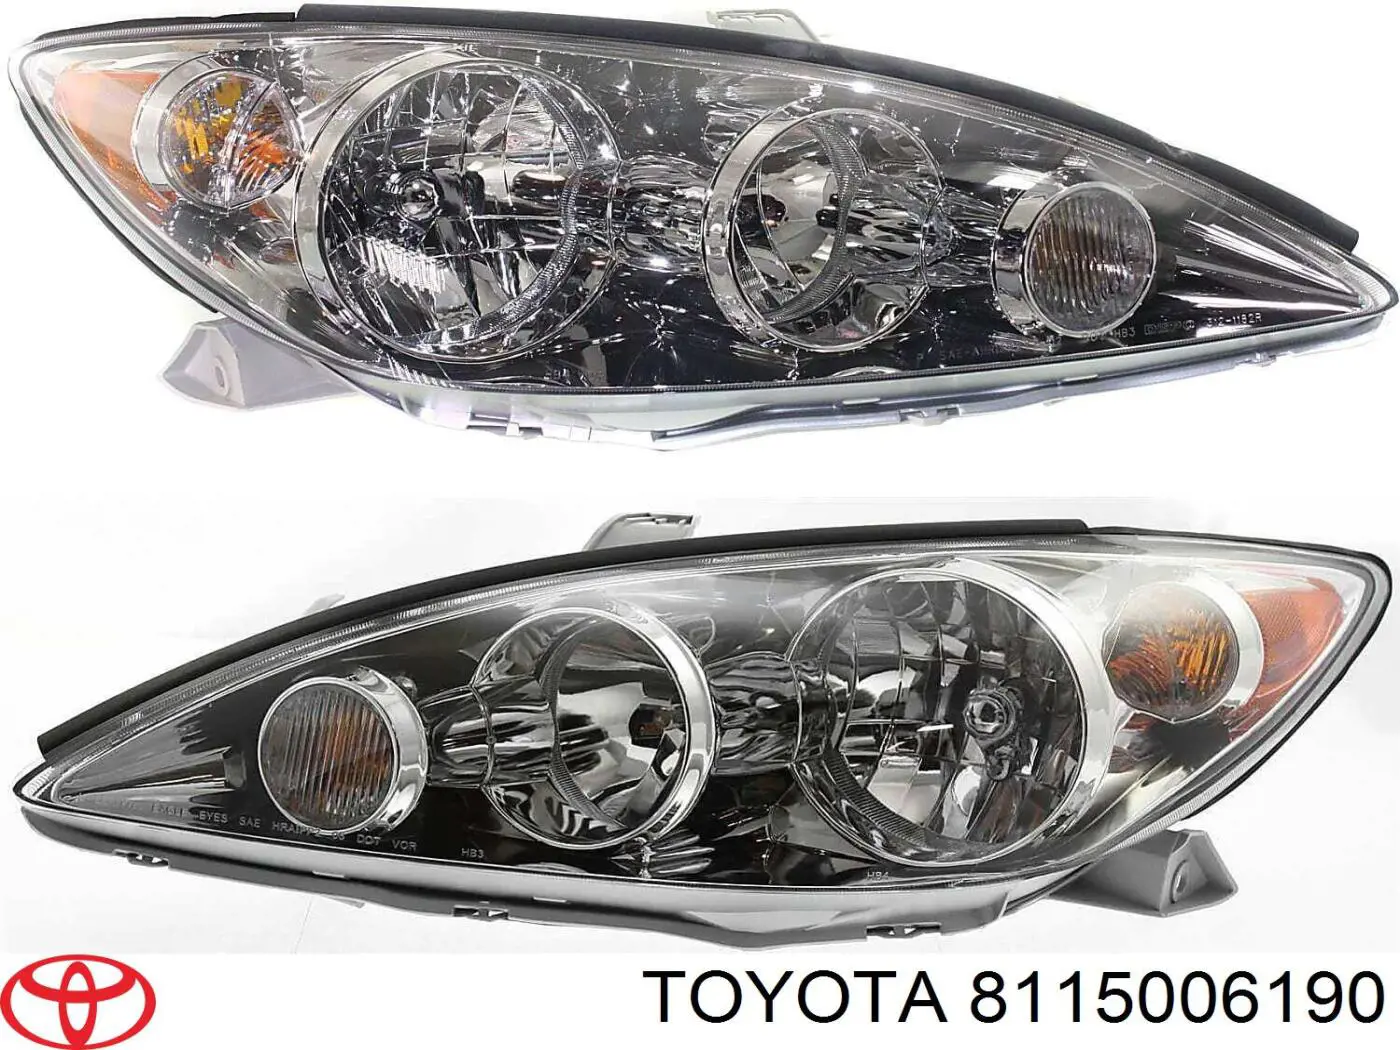 8115006190 Toyota luz esquerda